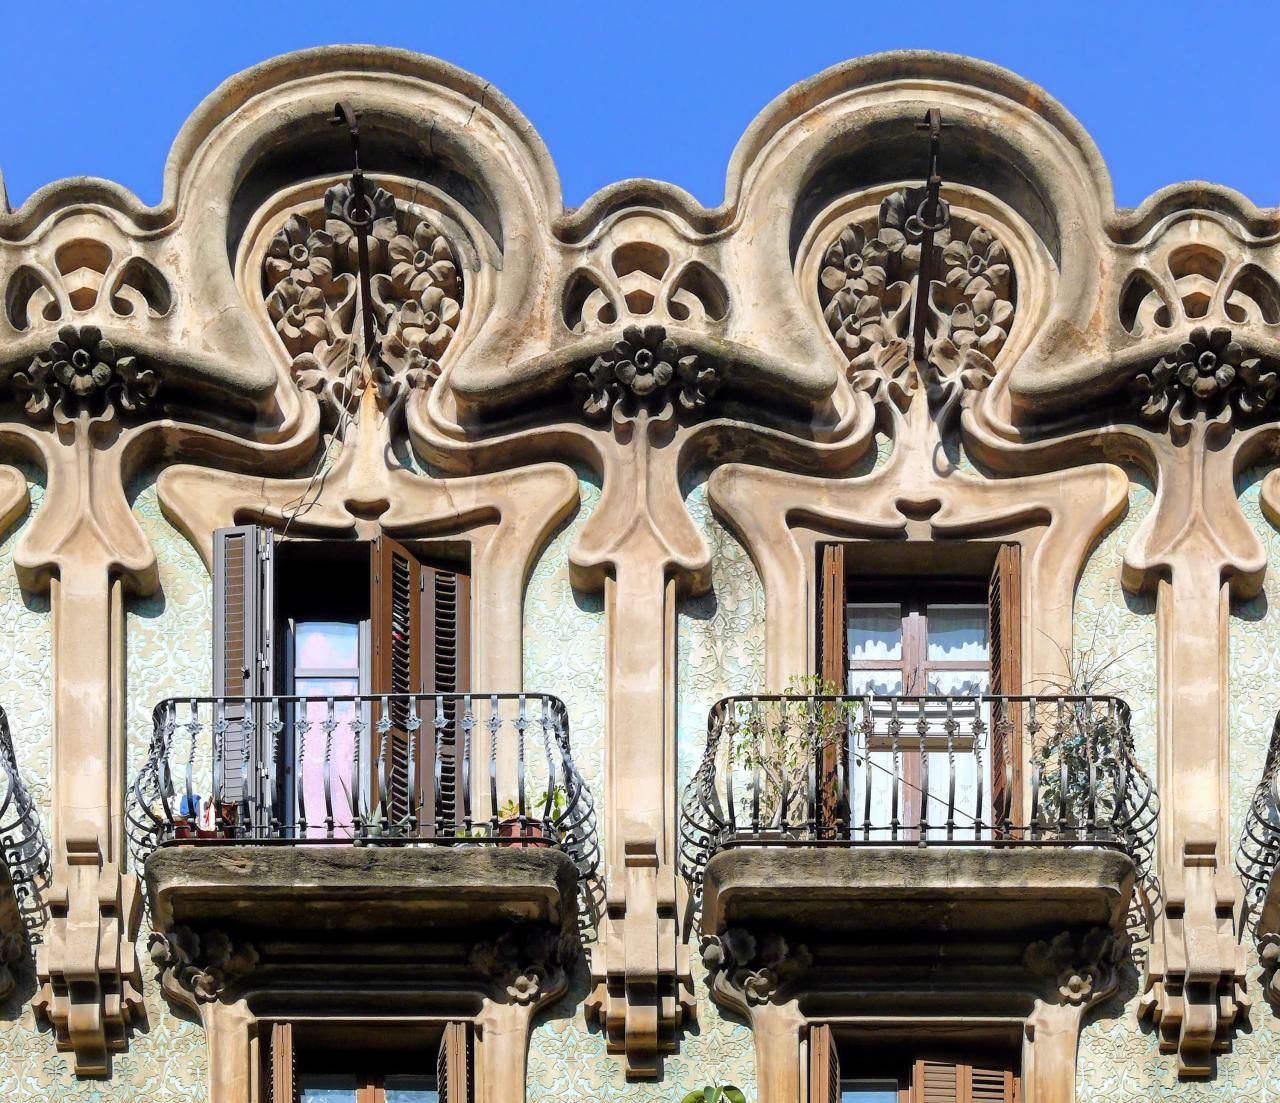 Традиции модерна. Гауди Модерн в архитектуре. Архитектура Гауди в Барселоне. Модерн/ар-нуво/югендстиль стиль в архитектуре. Ар нуво во Франции архитектура.